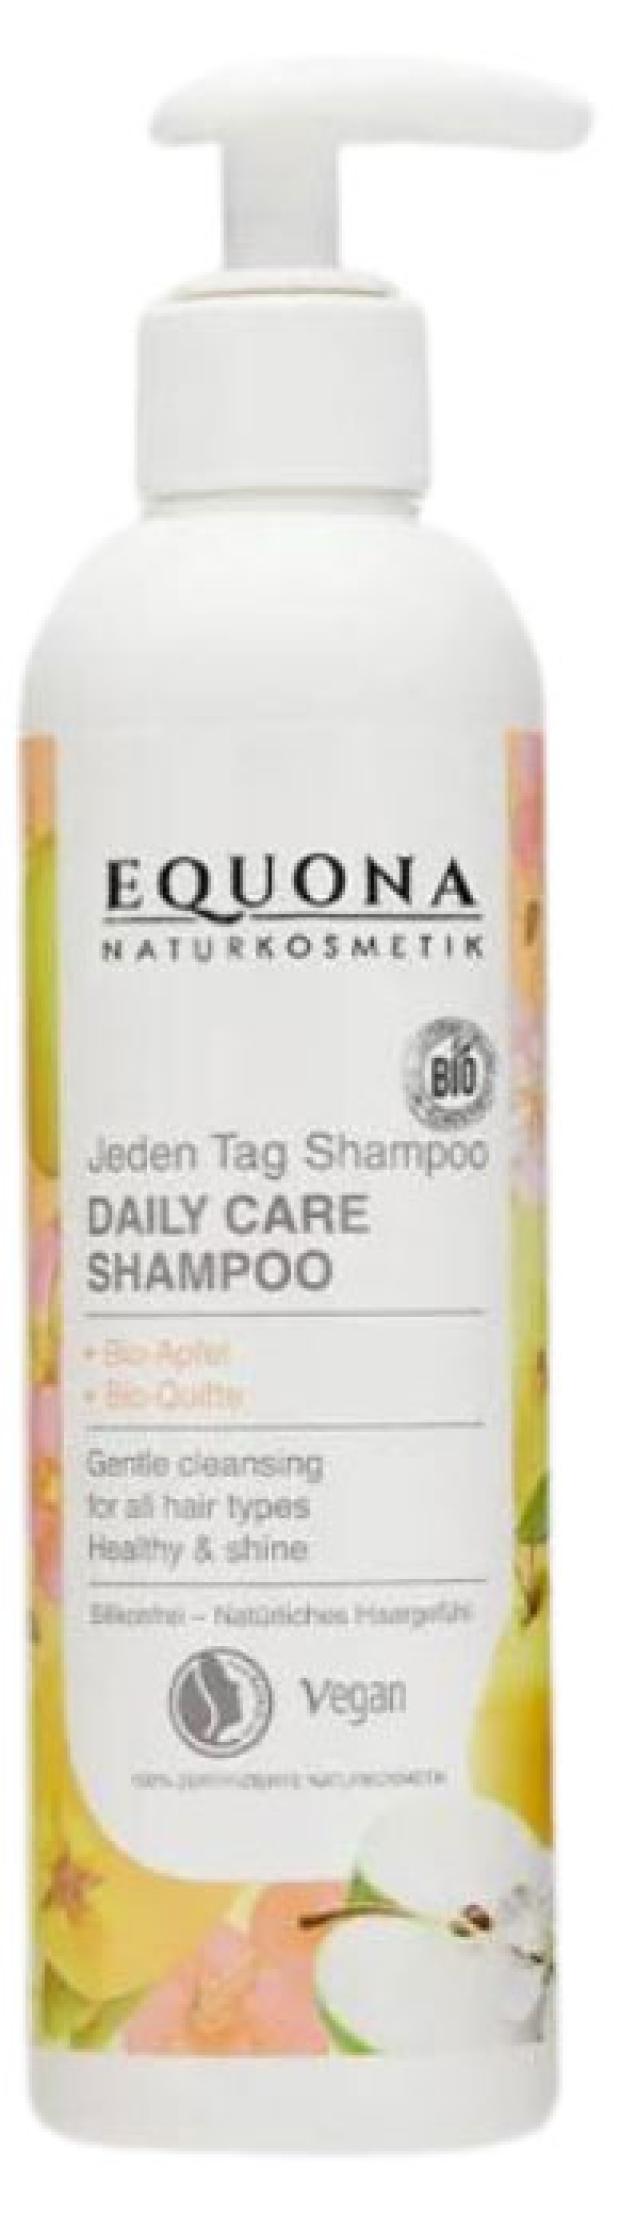 Шампунь для волос Equona для ежедневного ухода, 250 мл